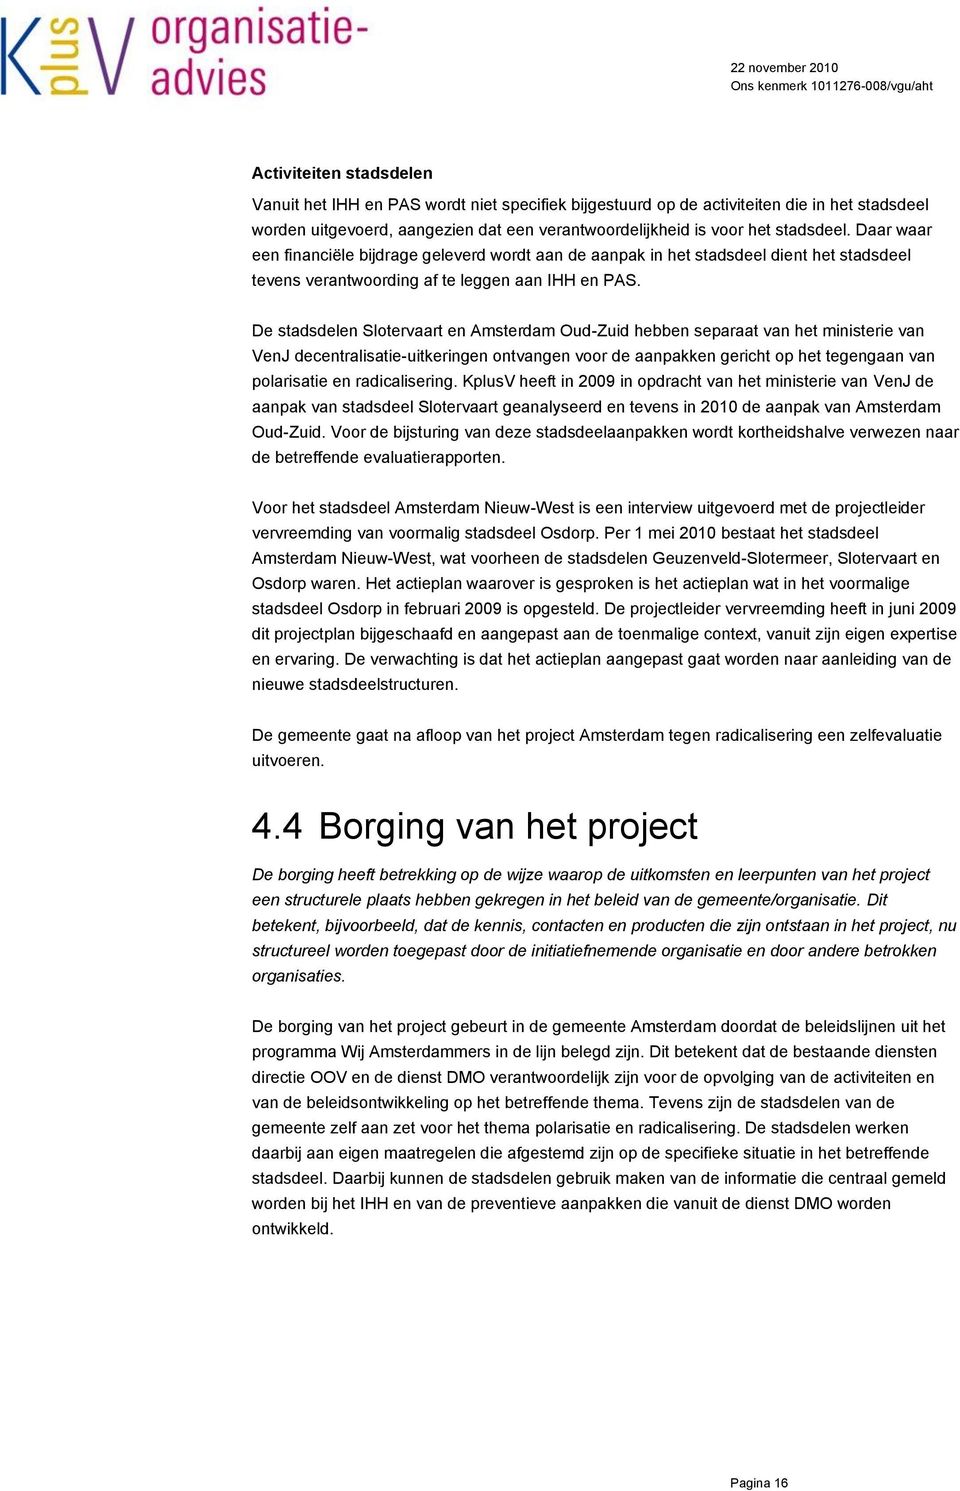 De stadsdelen Slotervaart en Amsterdam Oud-Zuid hebben separaat van het ministerie van VenJ decentralisatie-uitkeringen ontvangen voor de aanpakken gericht op het tegengaan van polarisatie en